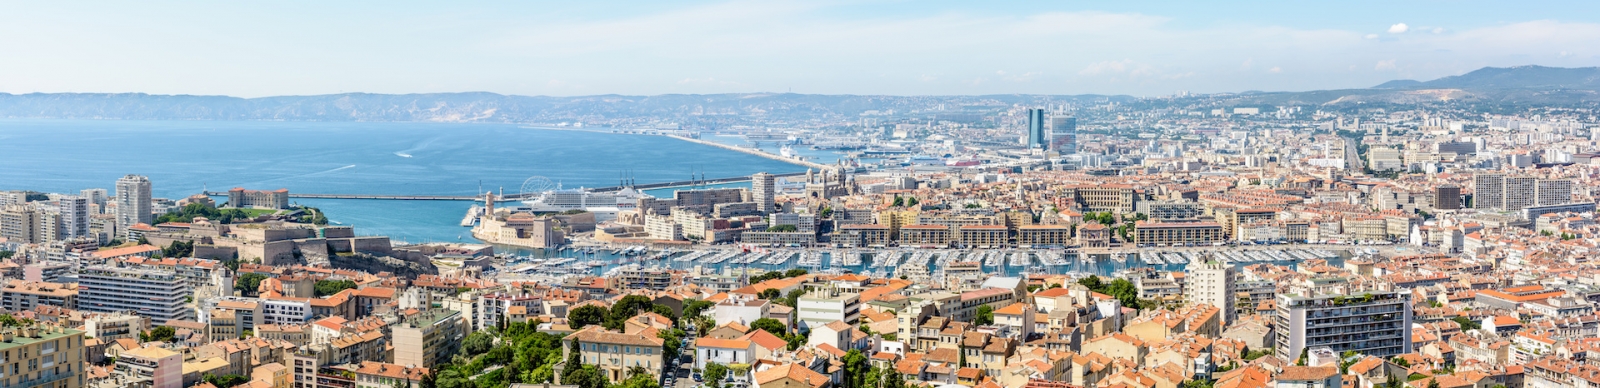 Panoramablick über den Alten Hafen, das historische Zentrum von Le Panier, den Großen Hafen von Marseille, die Küste und die nördlichen Bezirke in der Ferne